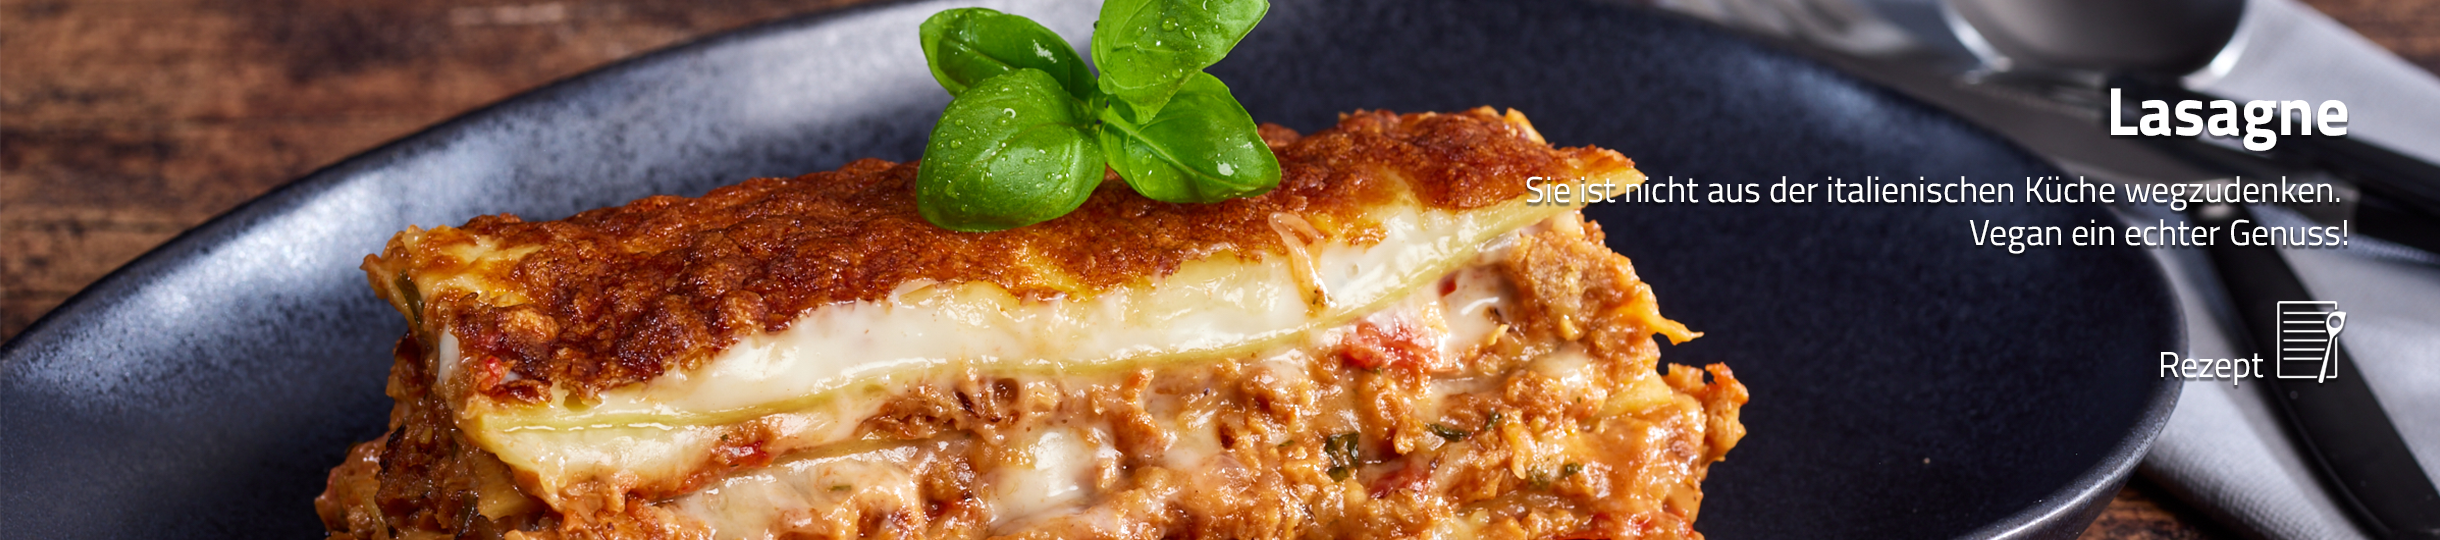 Lasagne, italienischer Leckerbissen als veganes Gericht. Zum Rezept